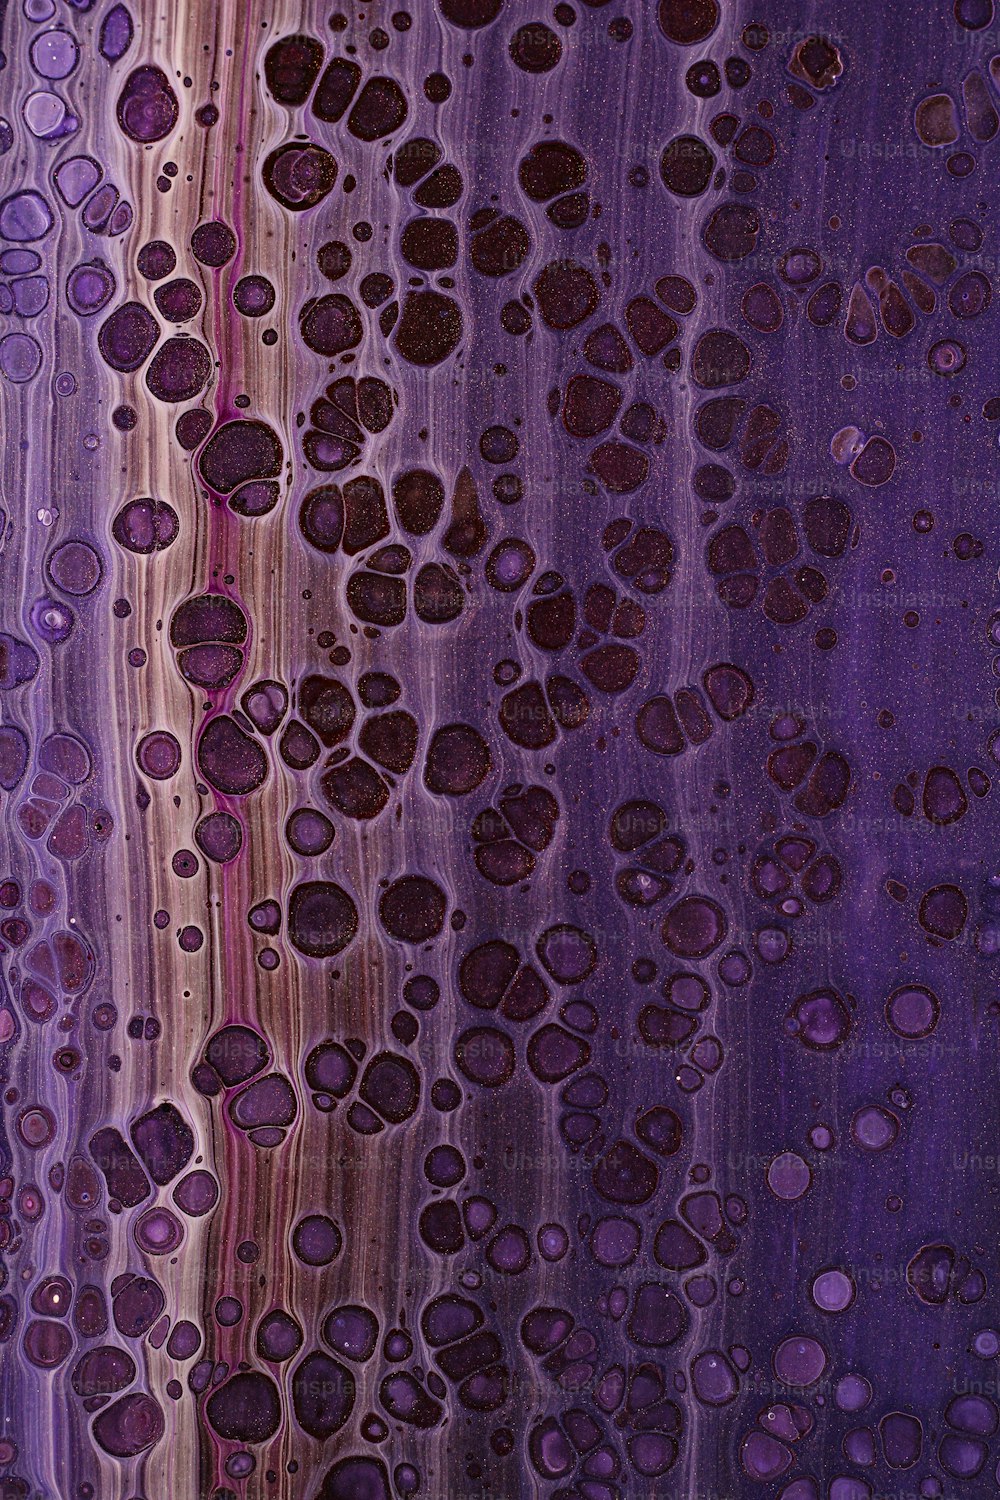 Eine Nahaufnahme von Wassertropfen auf einer violetten Oberfläche